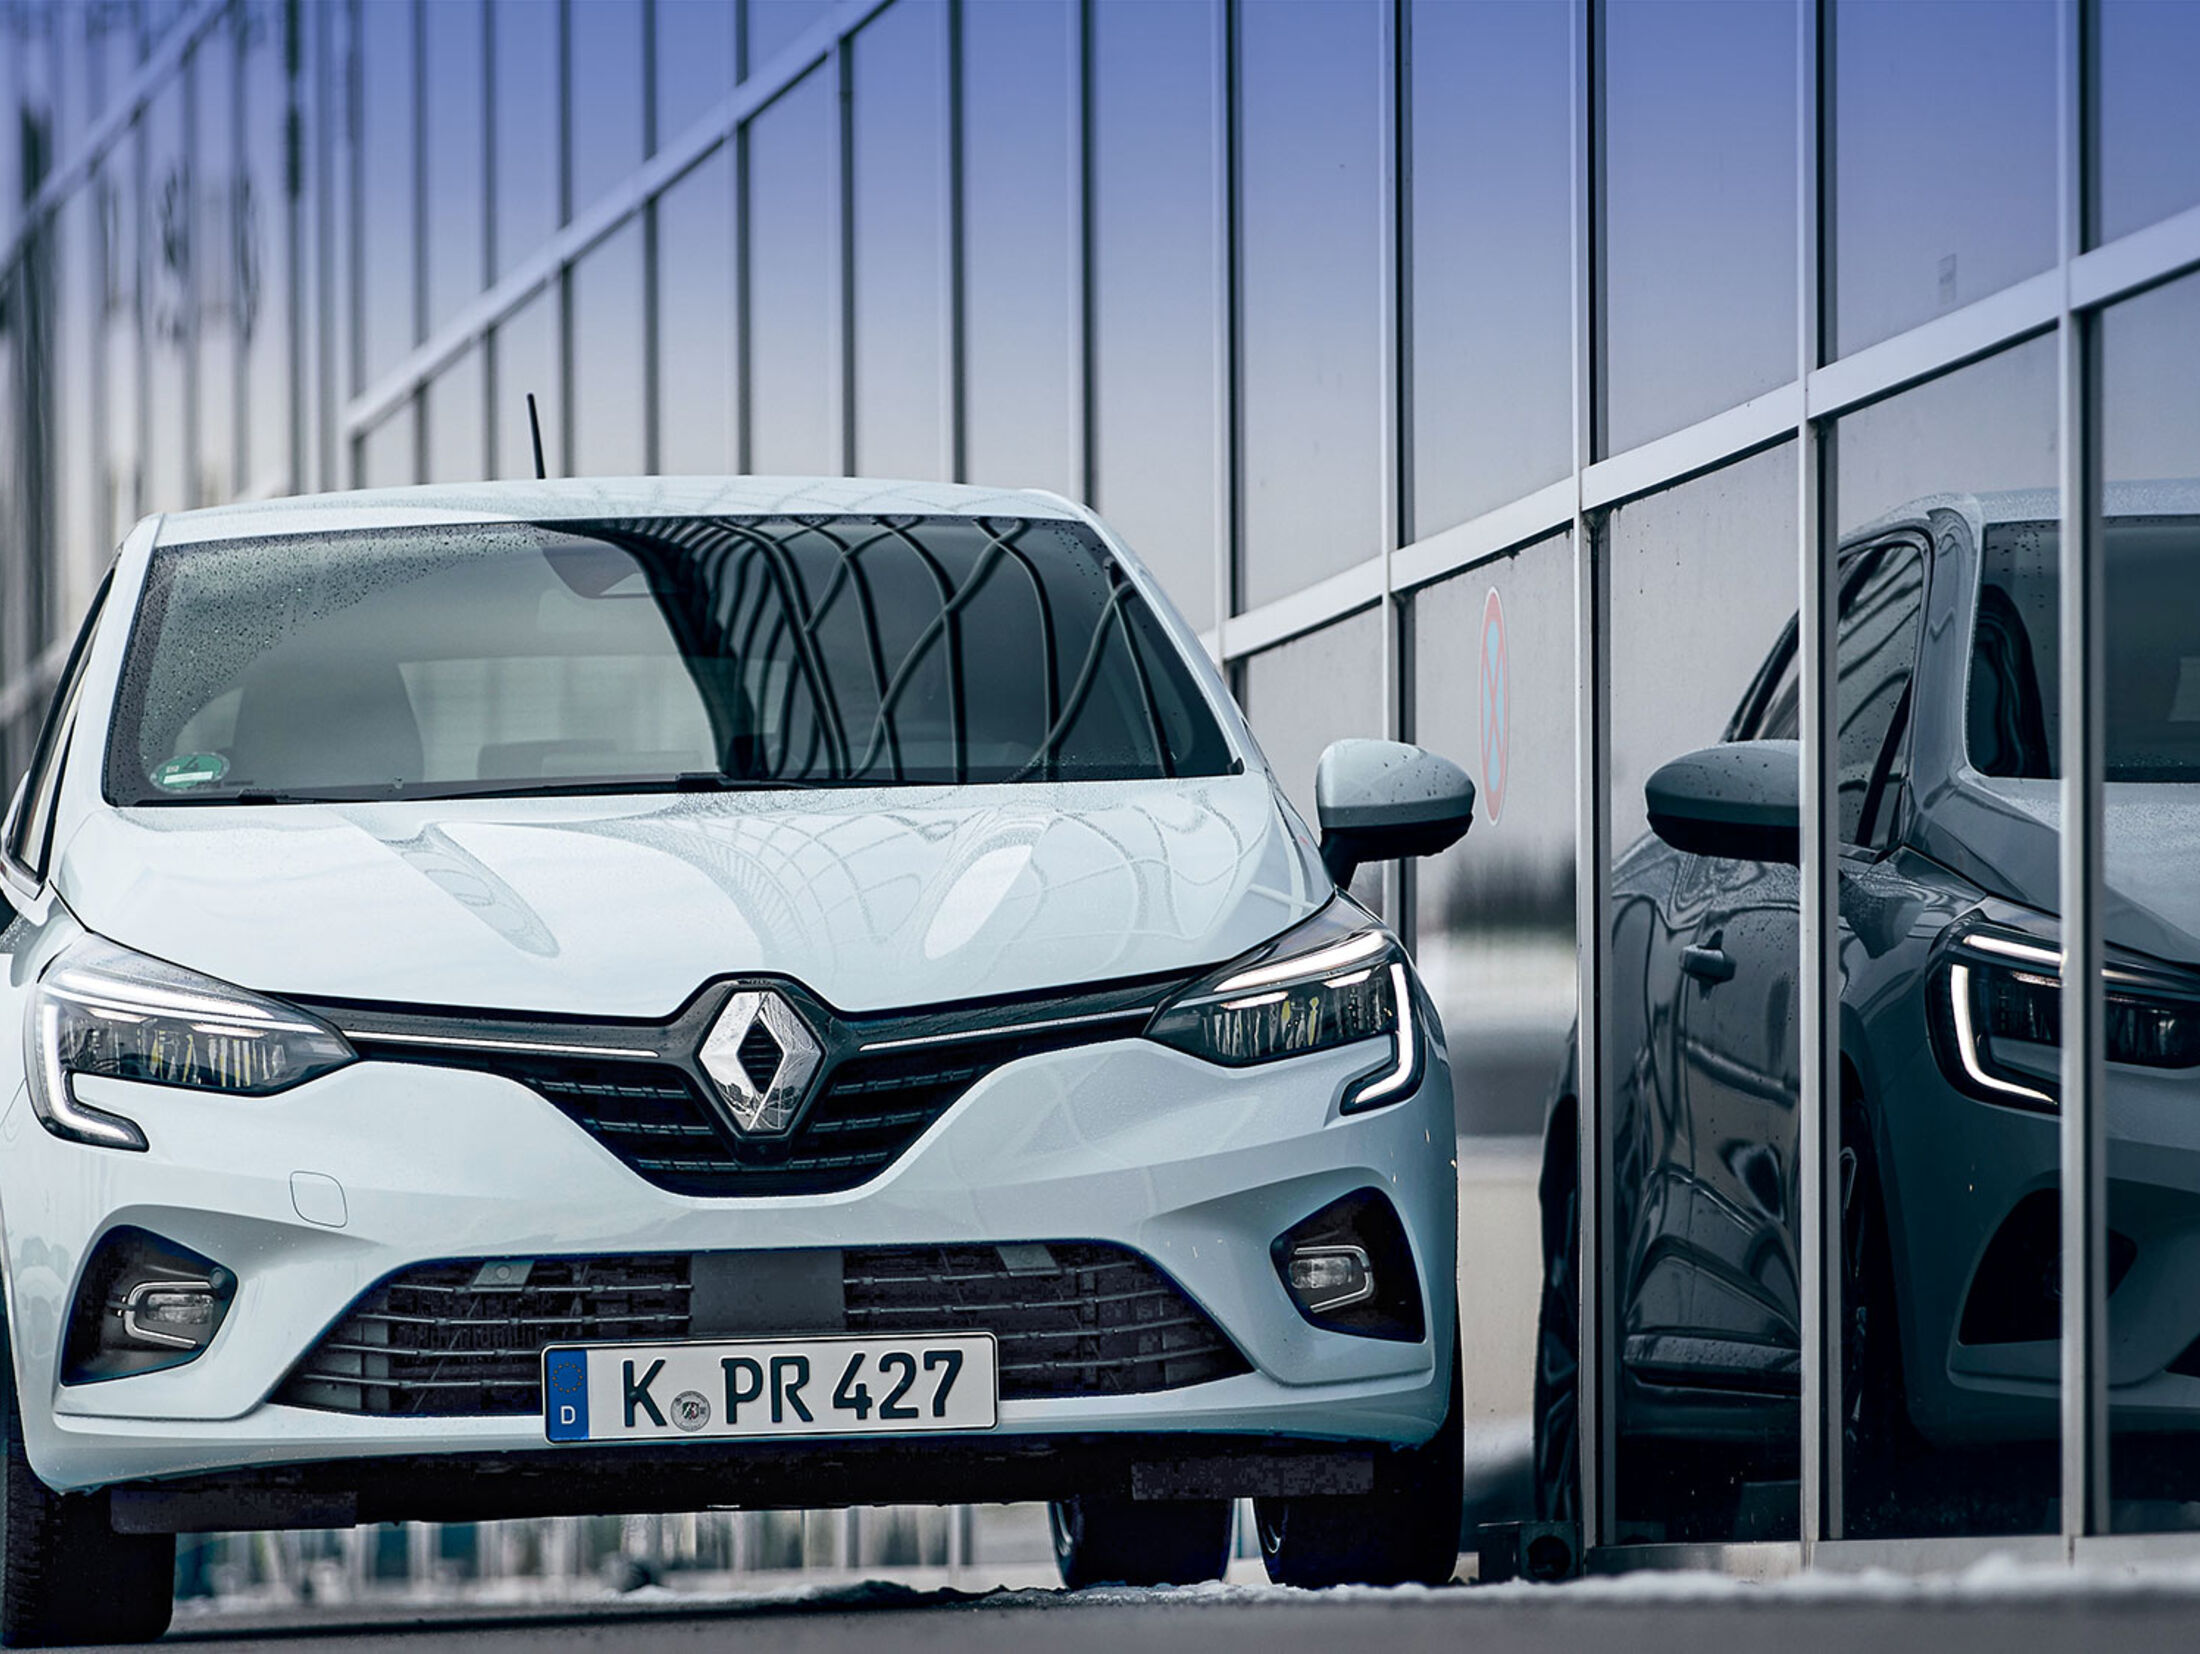 Renault Clio: fünf Gründe für den schicken Kleinwagen - Renault Welt